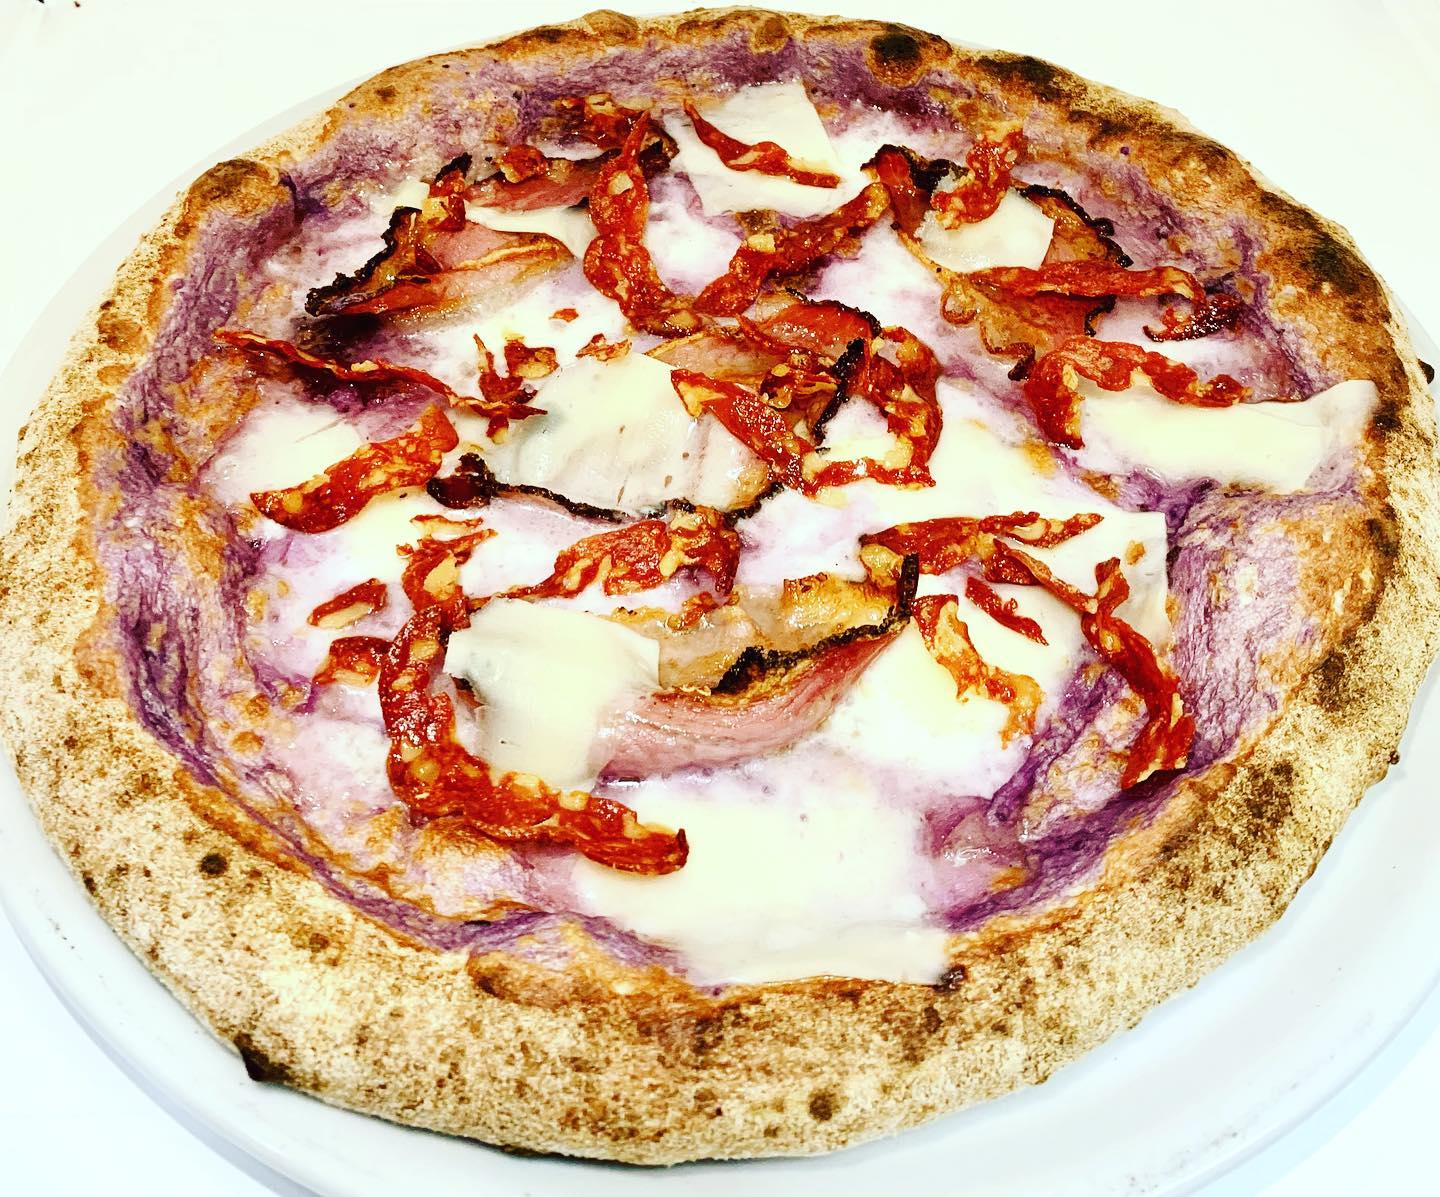 7 migliori pizzerie a Castellammare del Golfo, Castellammare del Golfo, Pizzeria Canale Vecchio, Pizza